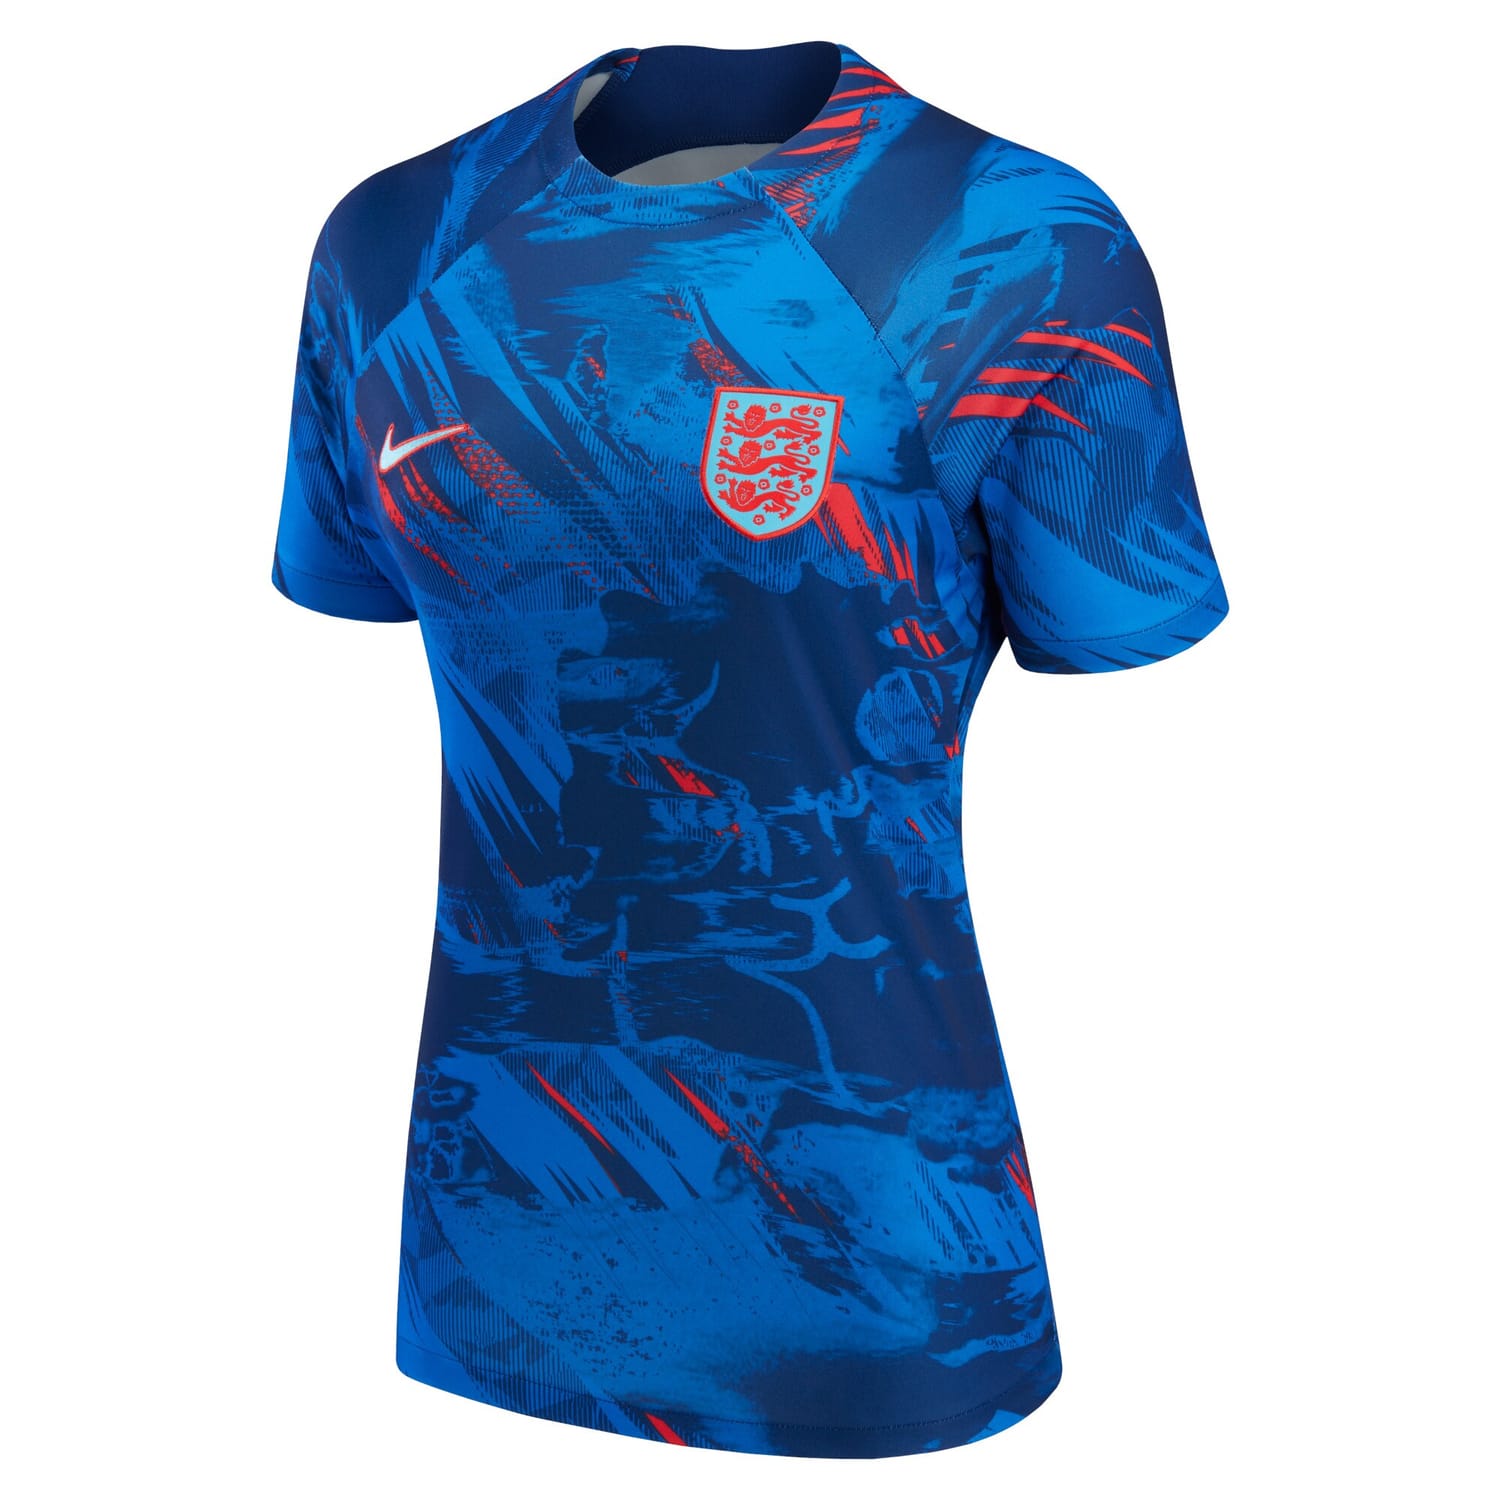 England National Team Pre-Match Jersey Shirt Blue 2022 for Women